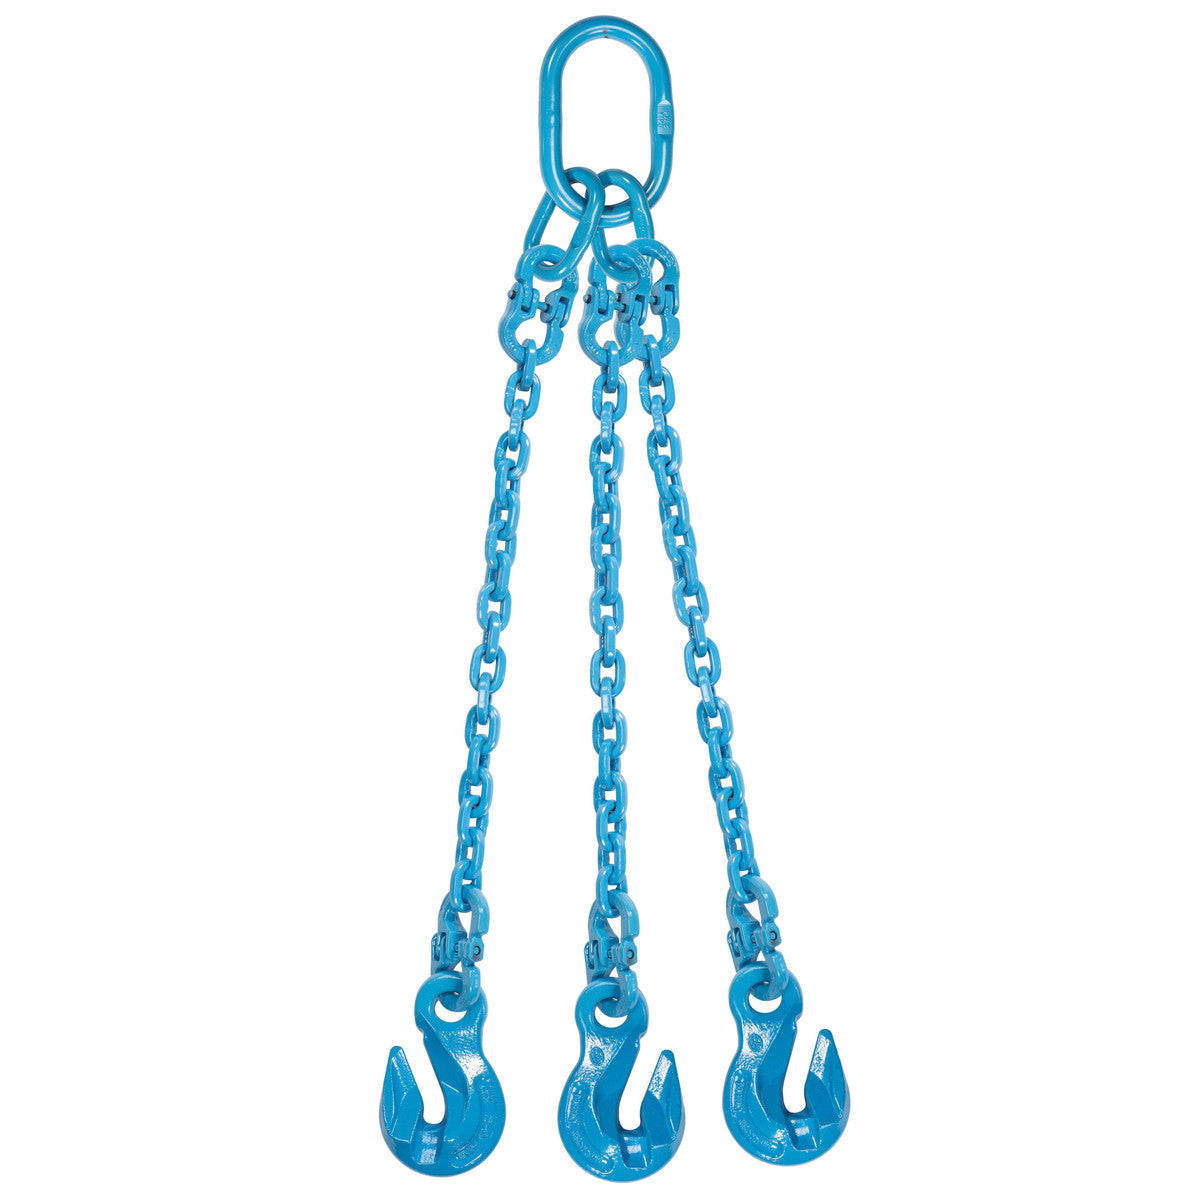 9/32" x 20' - Pewag 3 Leg Chain Sling w/ Grab Hooks - Grade 120